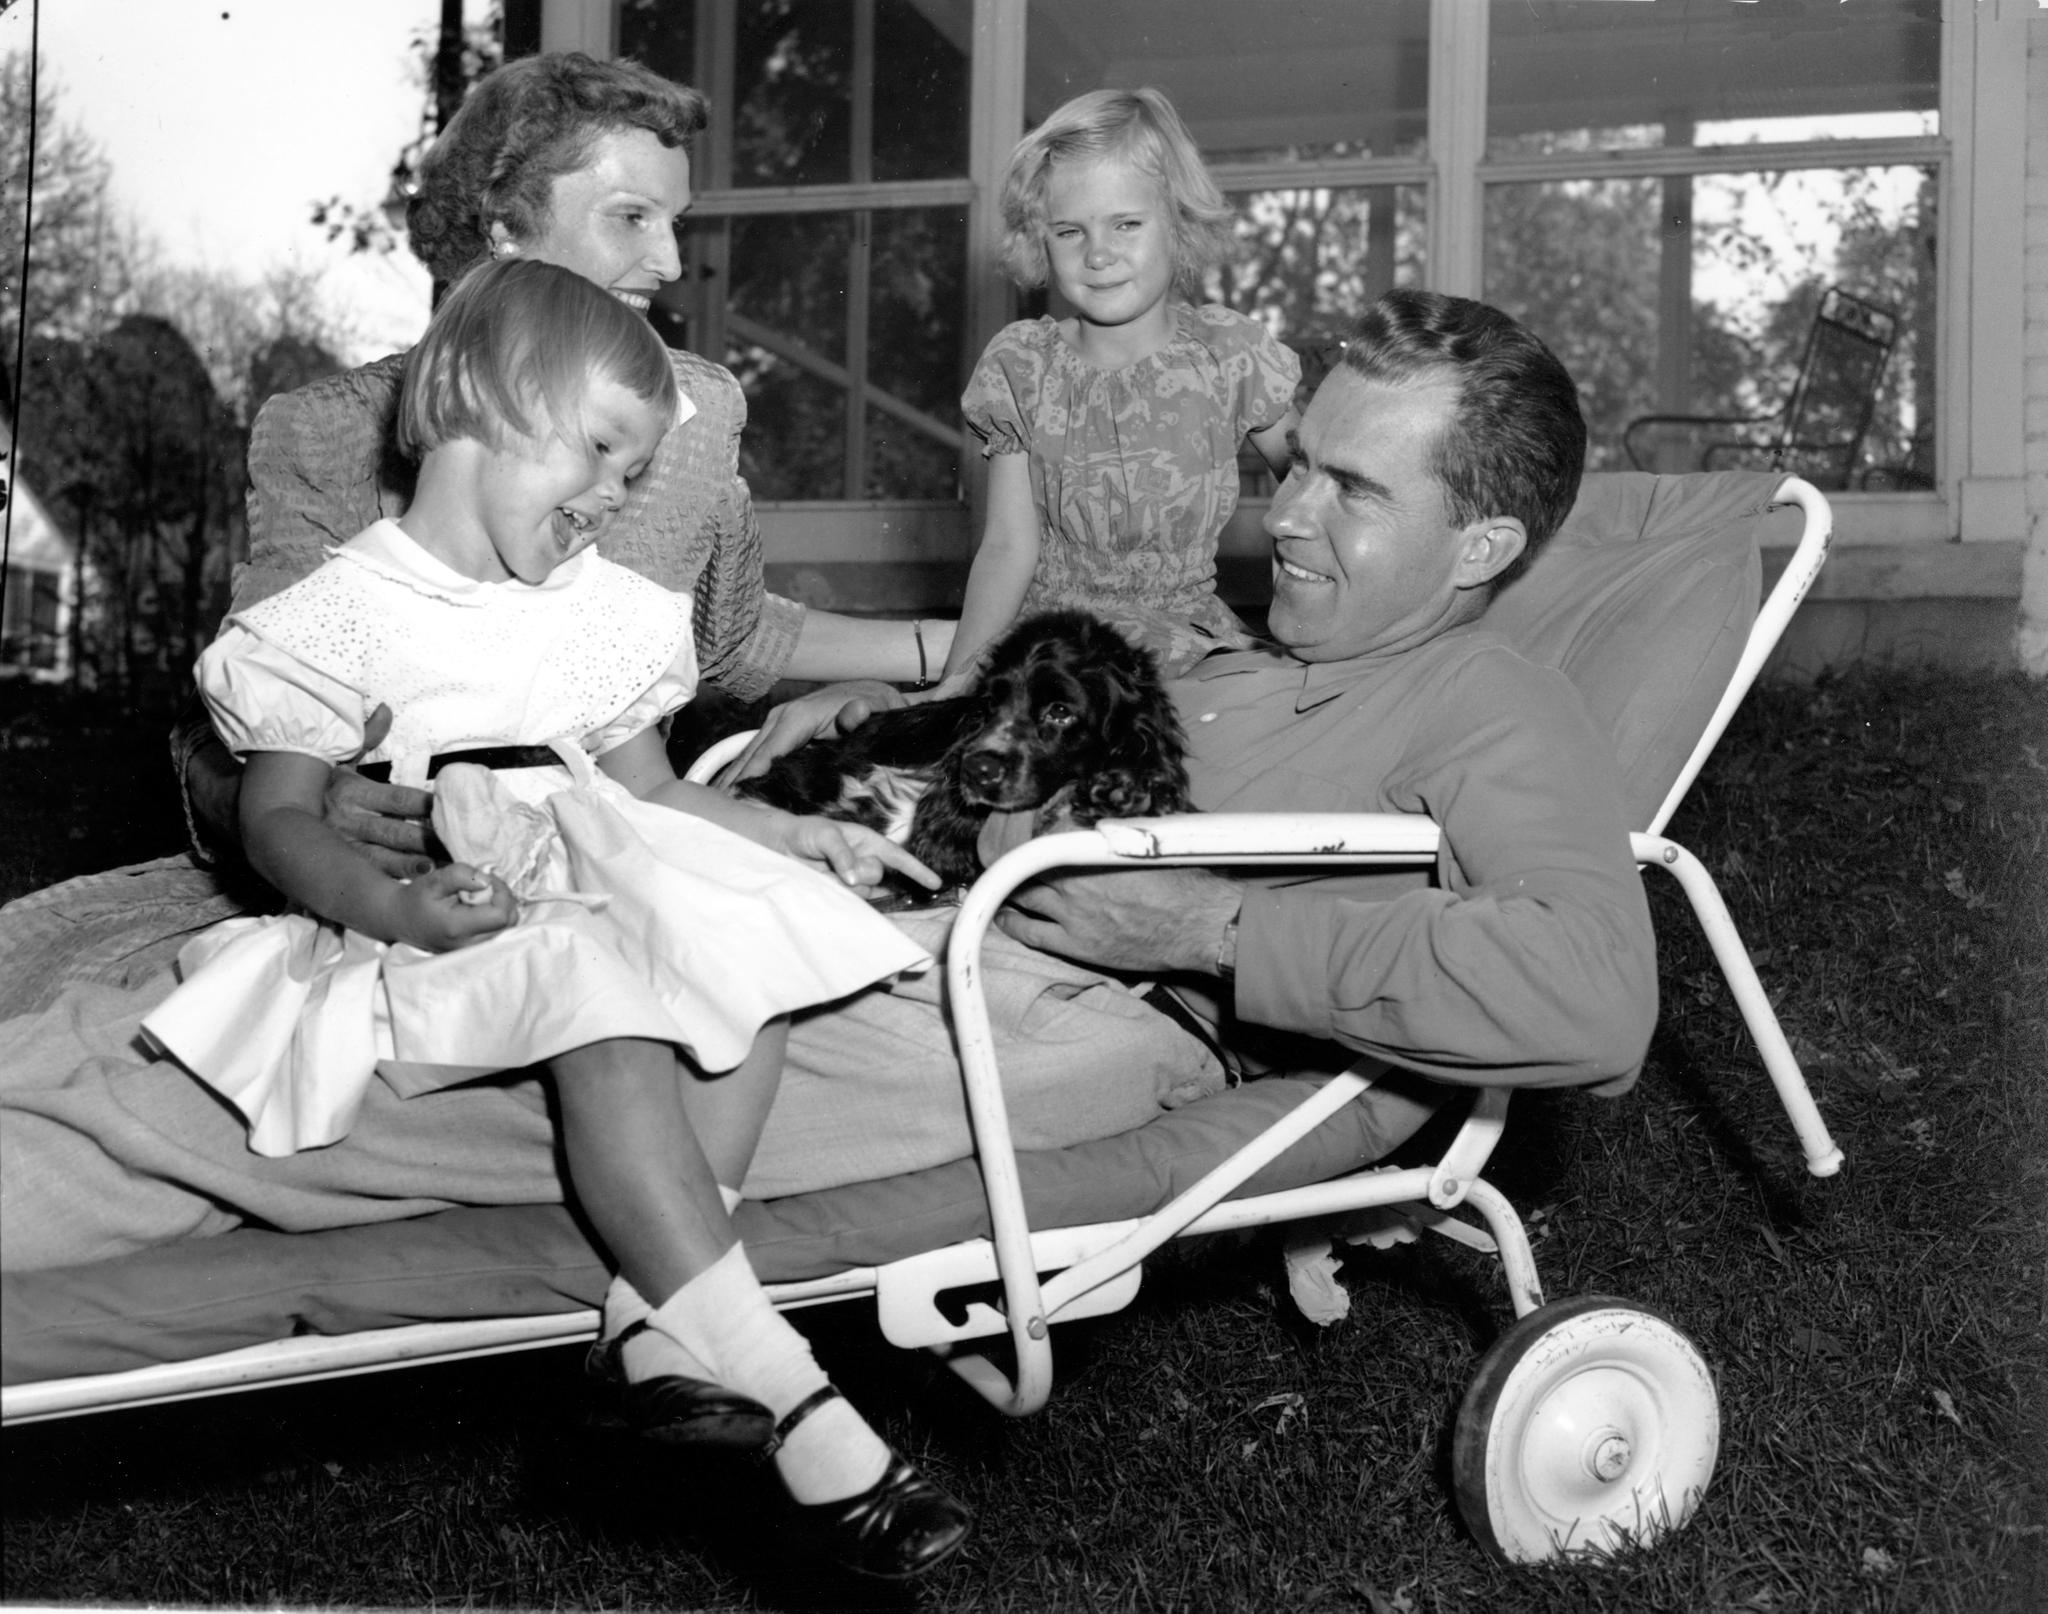 Richard Nixon med Checkers, omgitt av døtrene Julie og Patricia, samt kona Pat Nixon.